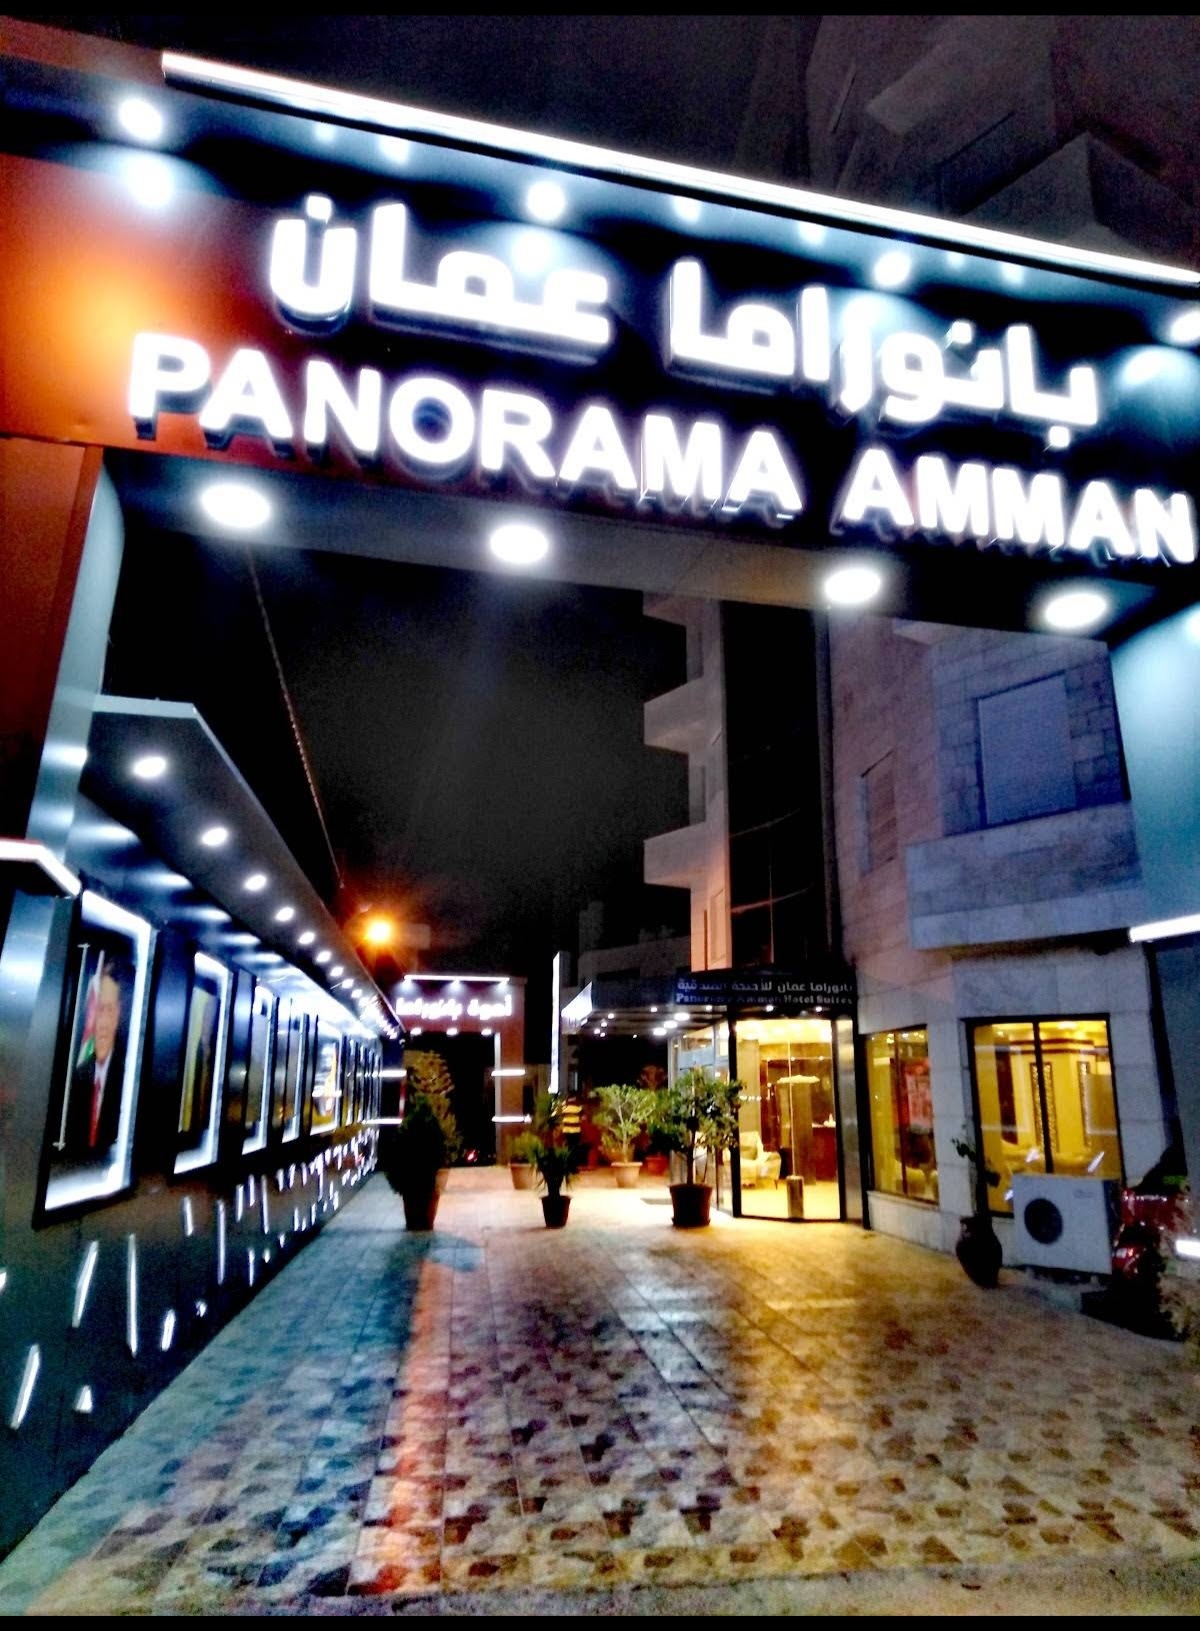 فندق بانوراما عمان في الاردن : افضل فنادق الاردن